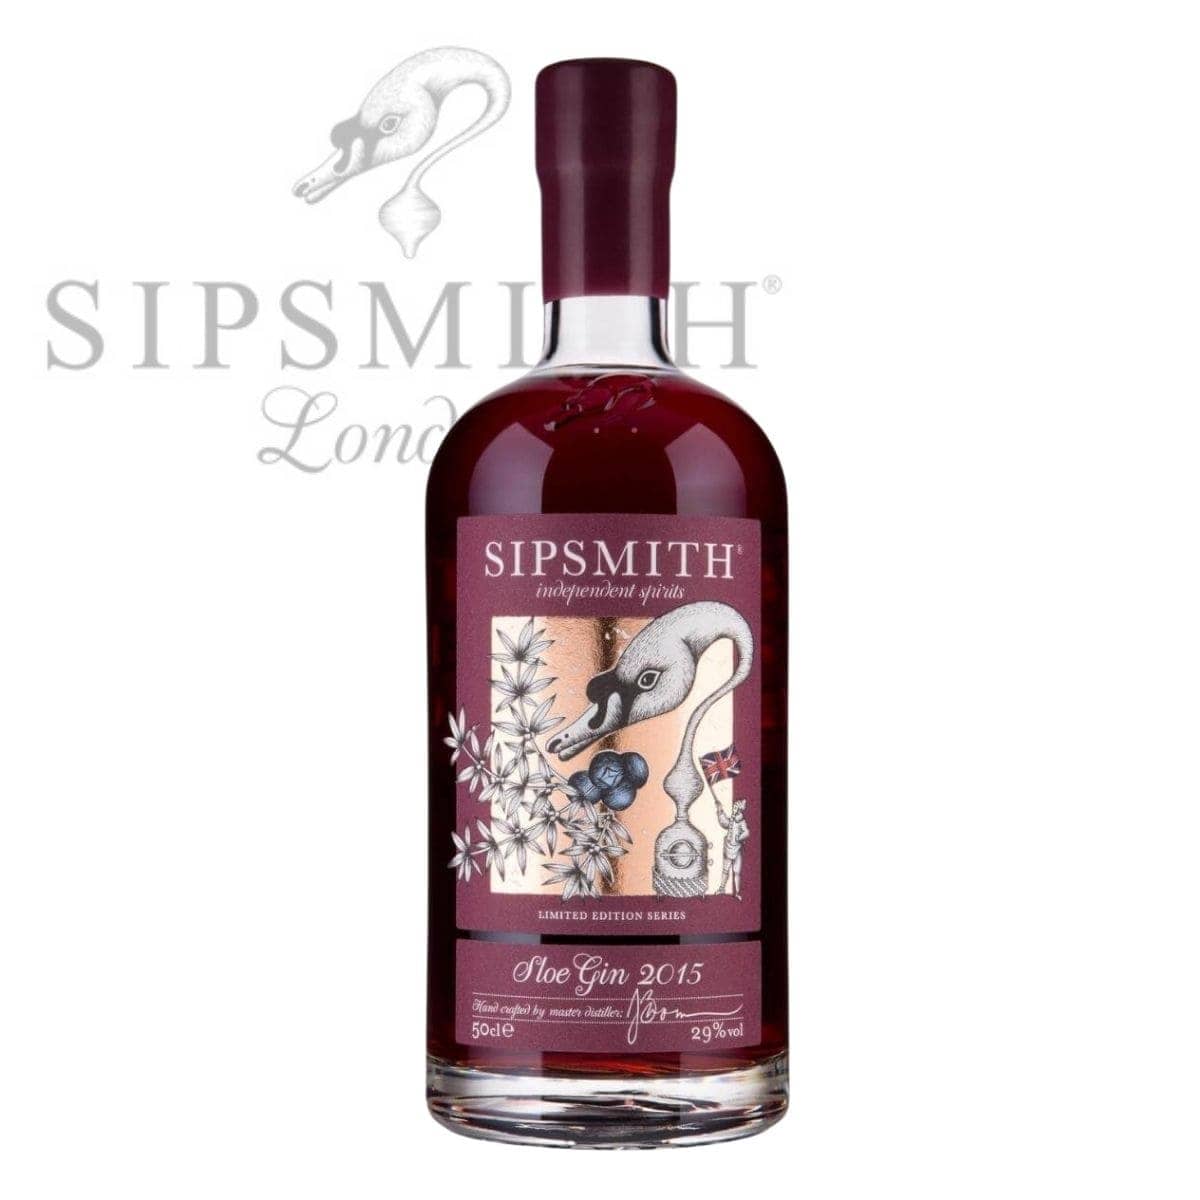 Sipsmith Sloe Gin |online kaufen bei Drinkevolution.de